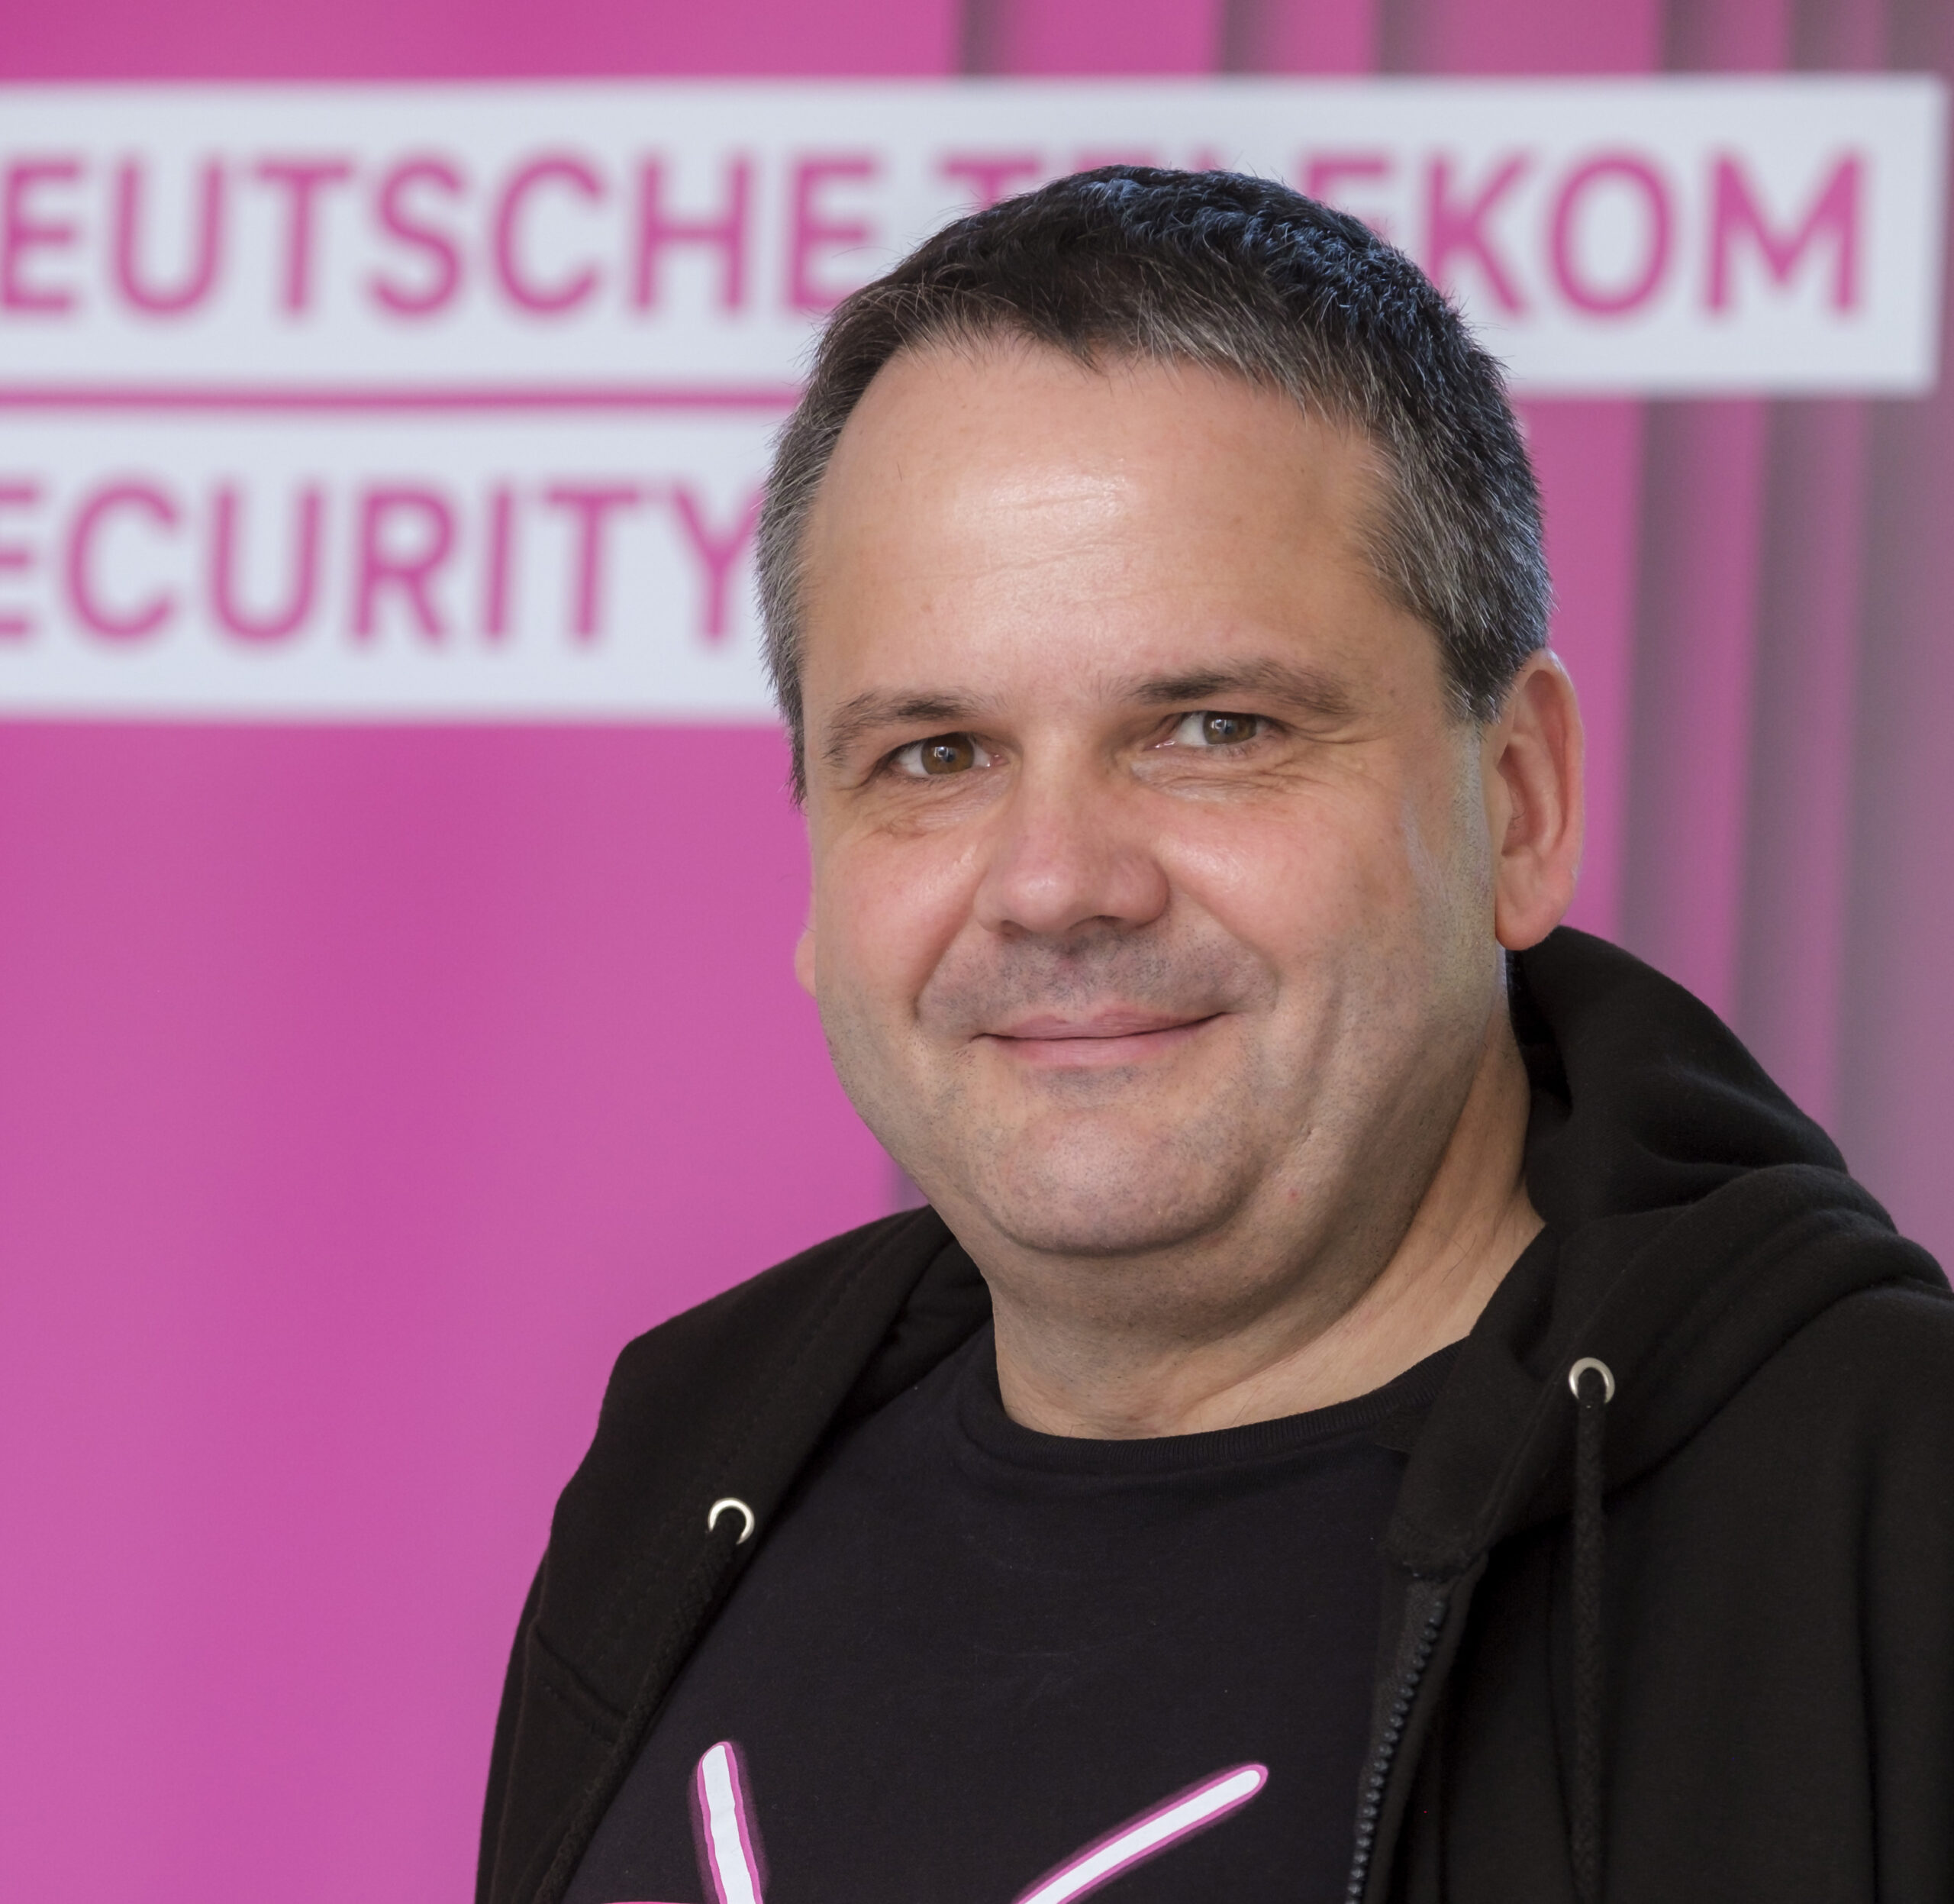 24.06.3020 Bonn Telekom Security GmbH

Thomas Tschersich


Freigabe nur für interne redaktionelle Nutzung und Dokumentation. Dem Fotograf liegt keine schriftliche Einverständnis vor. Jede weitere Nutzung nur nach Rücksprache mit der abgebildeten Personen!